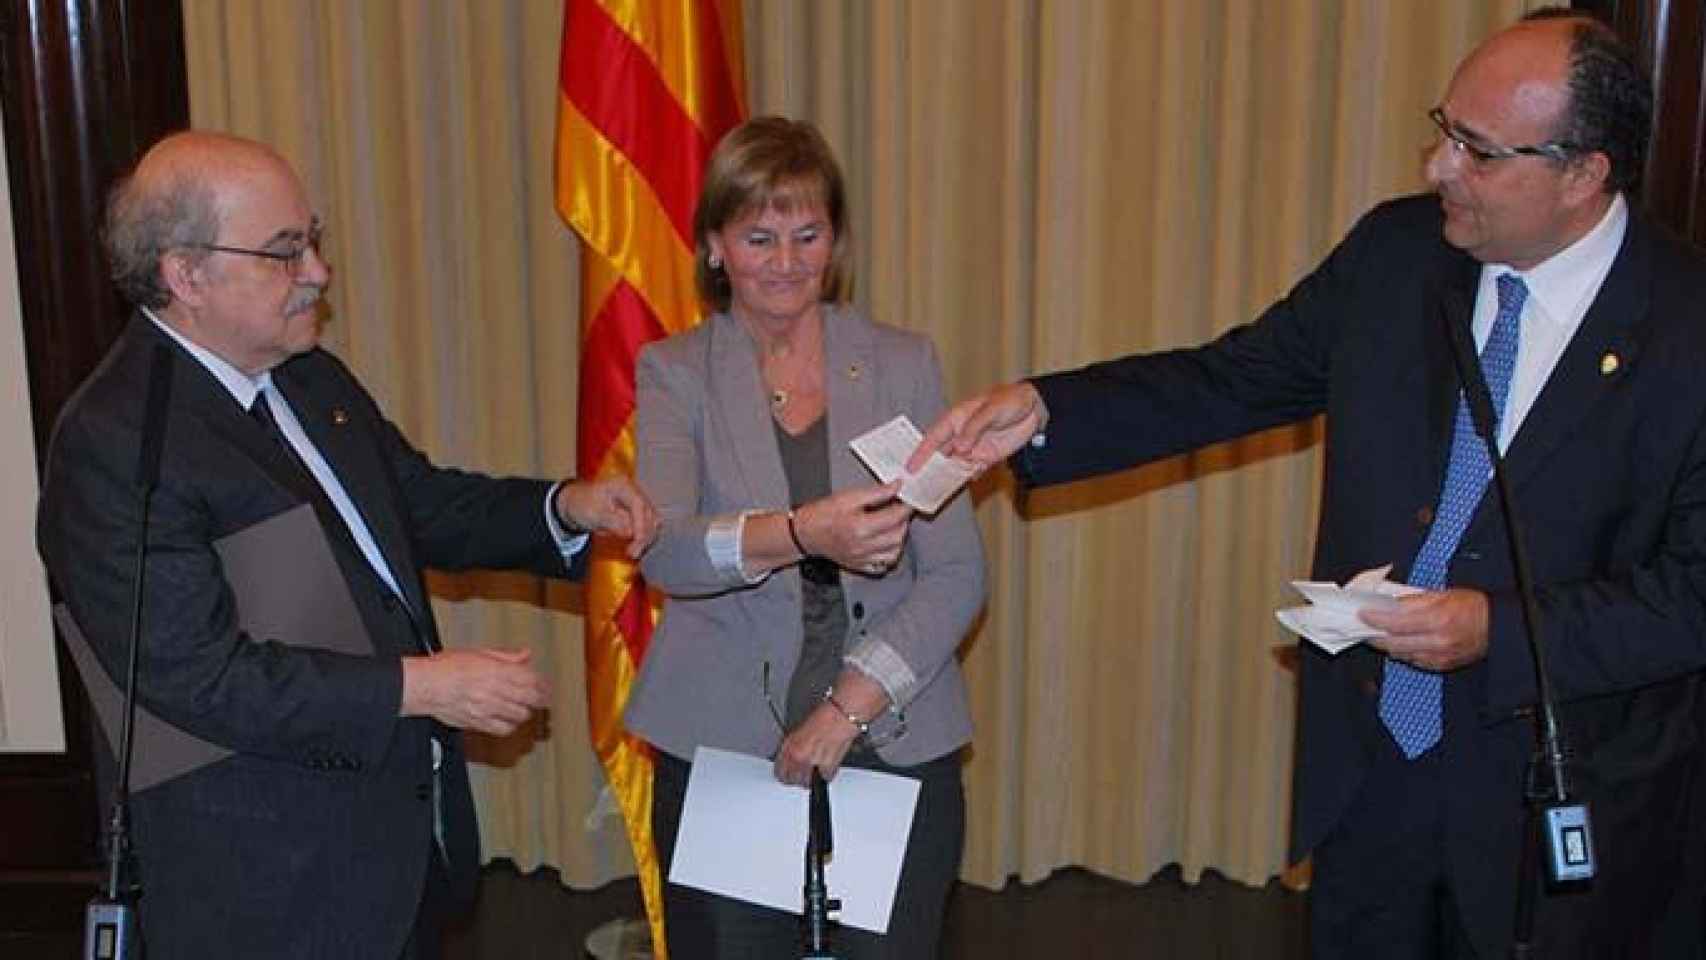 El Síndico Mayor Jaume Amat entrega un cheque de 3,1 millones ahorrados por esta institución al exconsejero de Economía, Andreu Mas-Colell, en 2011 / CG